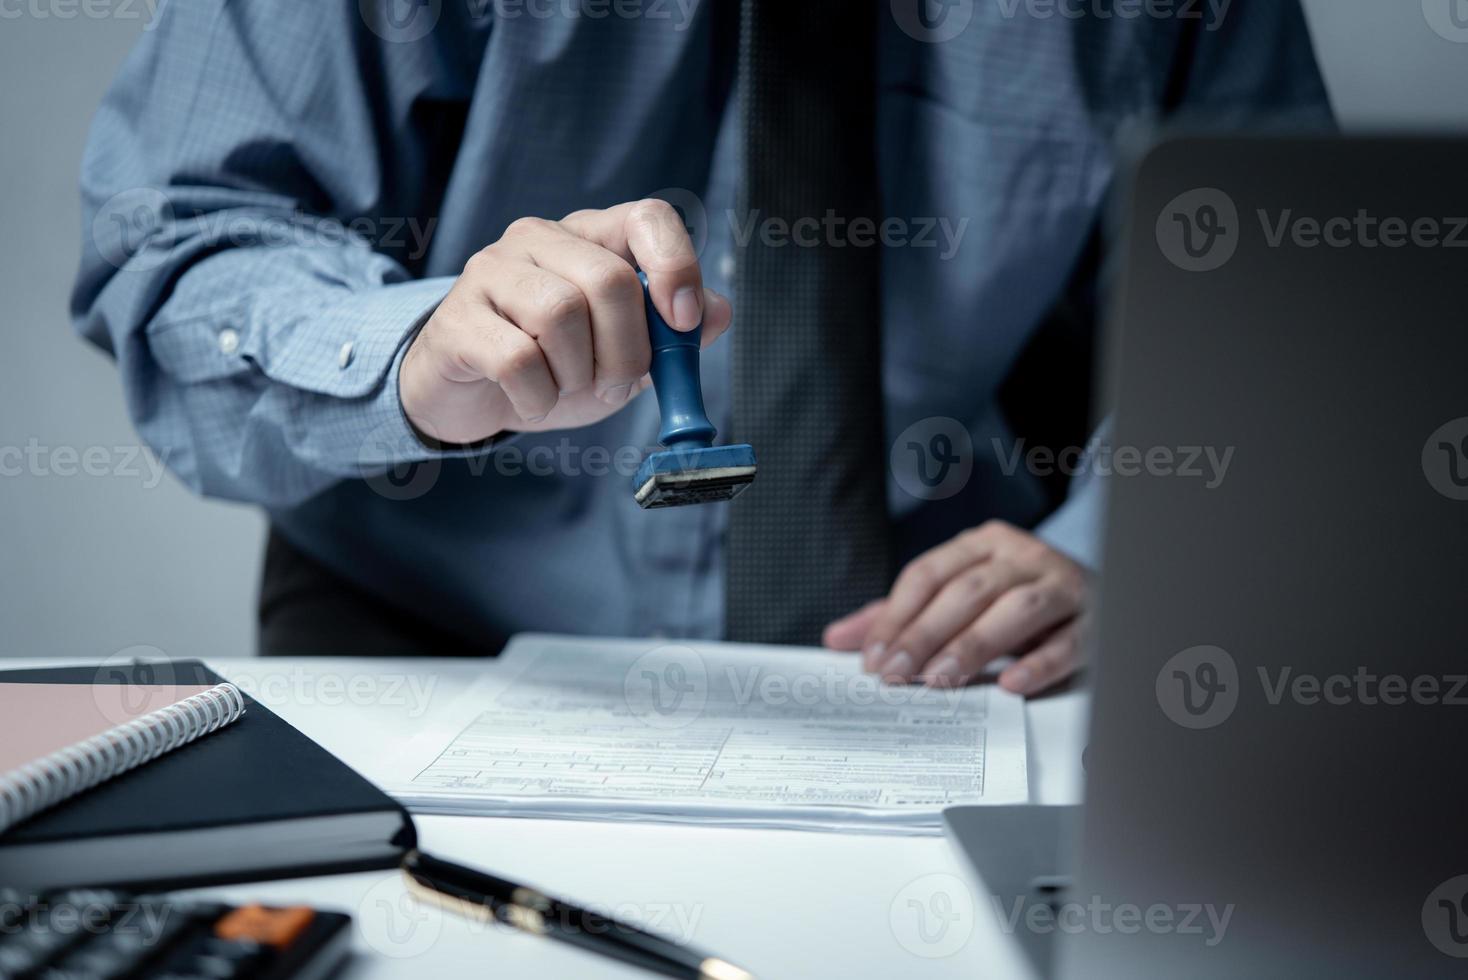 affärsman stämpel sudd med godkänd stämpel på dokumentera kontrakt eller pappersarbete advokat. foto